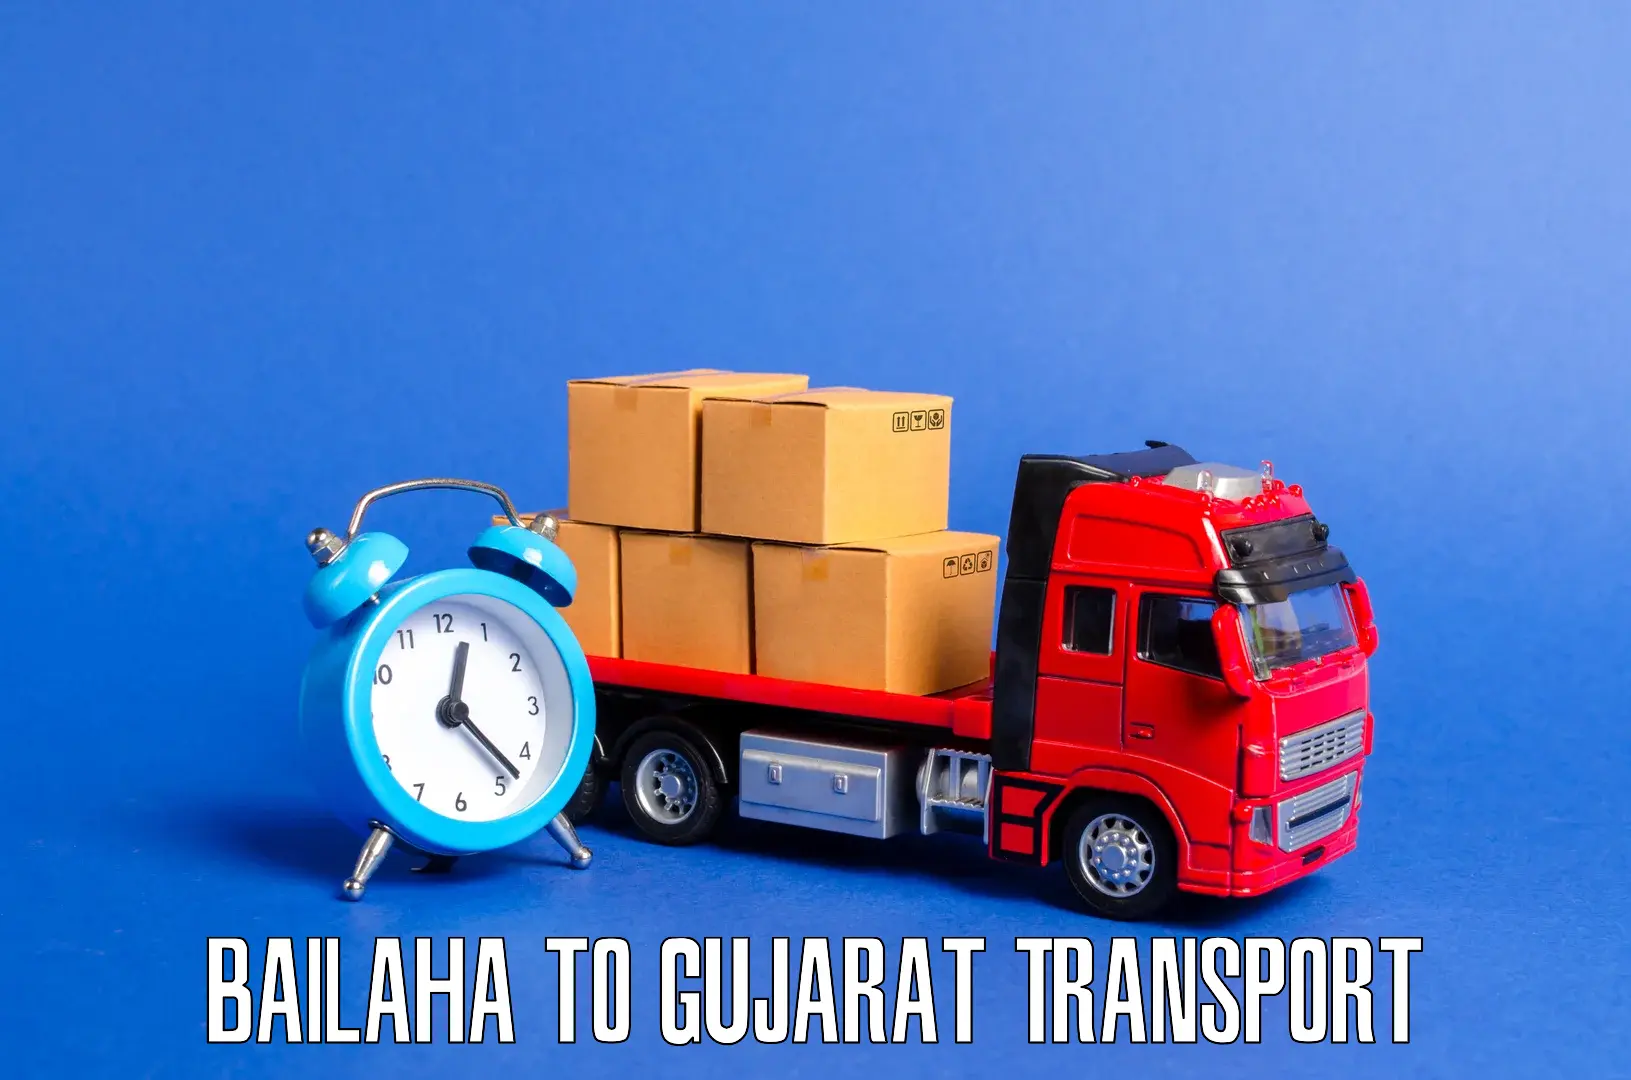 Furniture transport service Bailaha to Dhandhuka